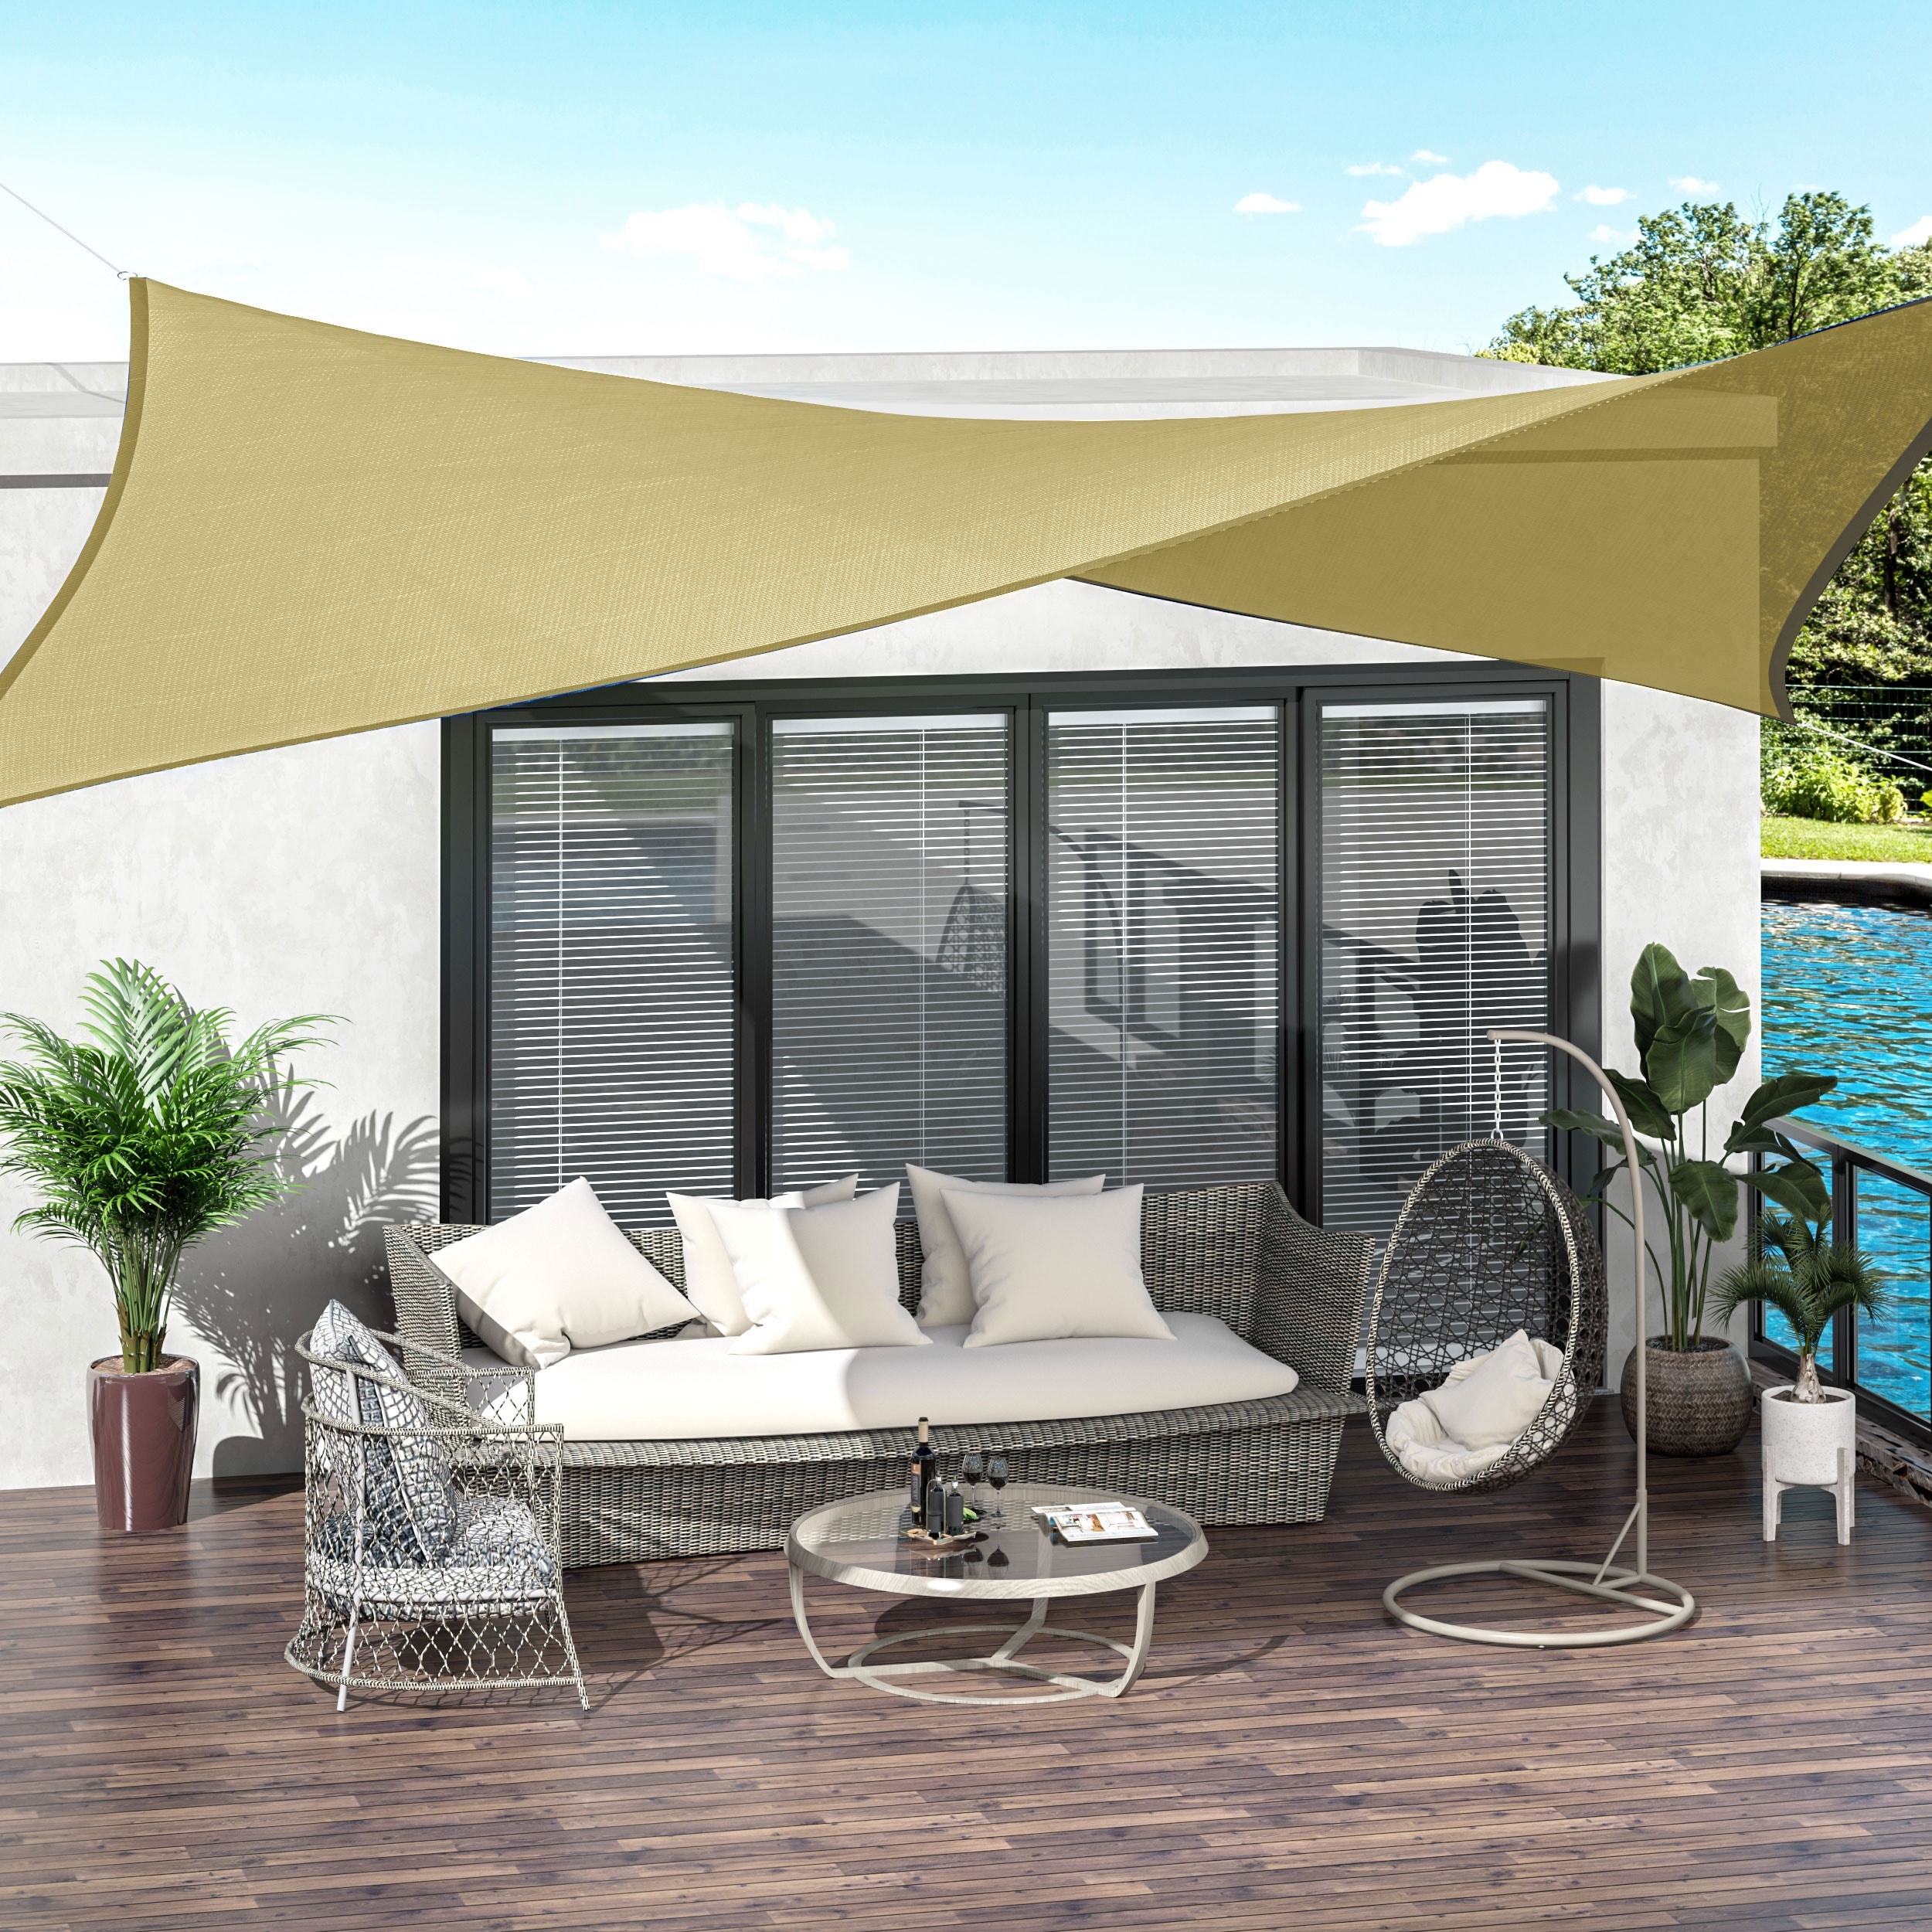 ## Sun Shade Sail Garden Patio Sunscreen Awning Canopy Shade 98%UV Block 